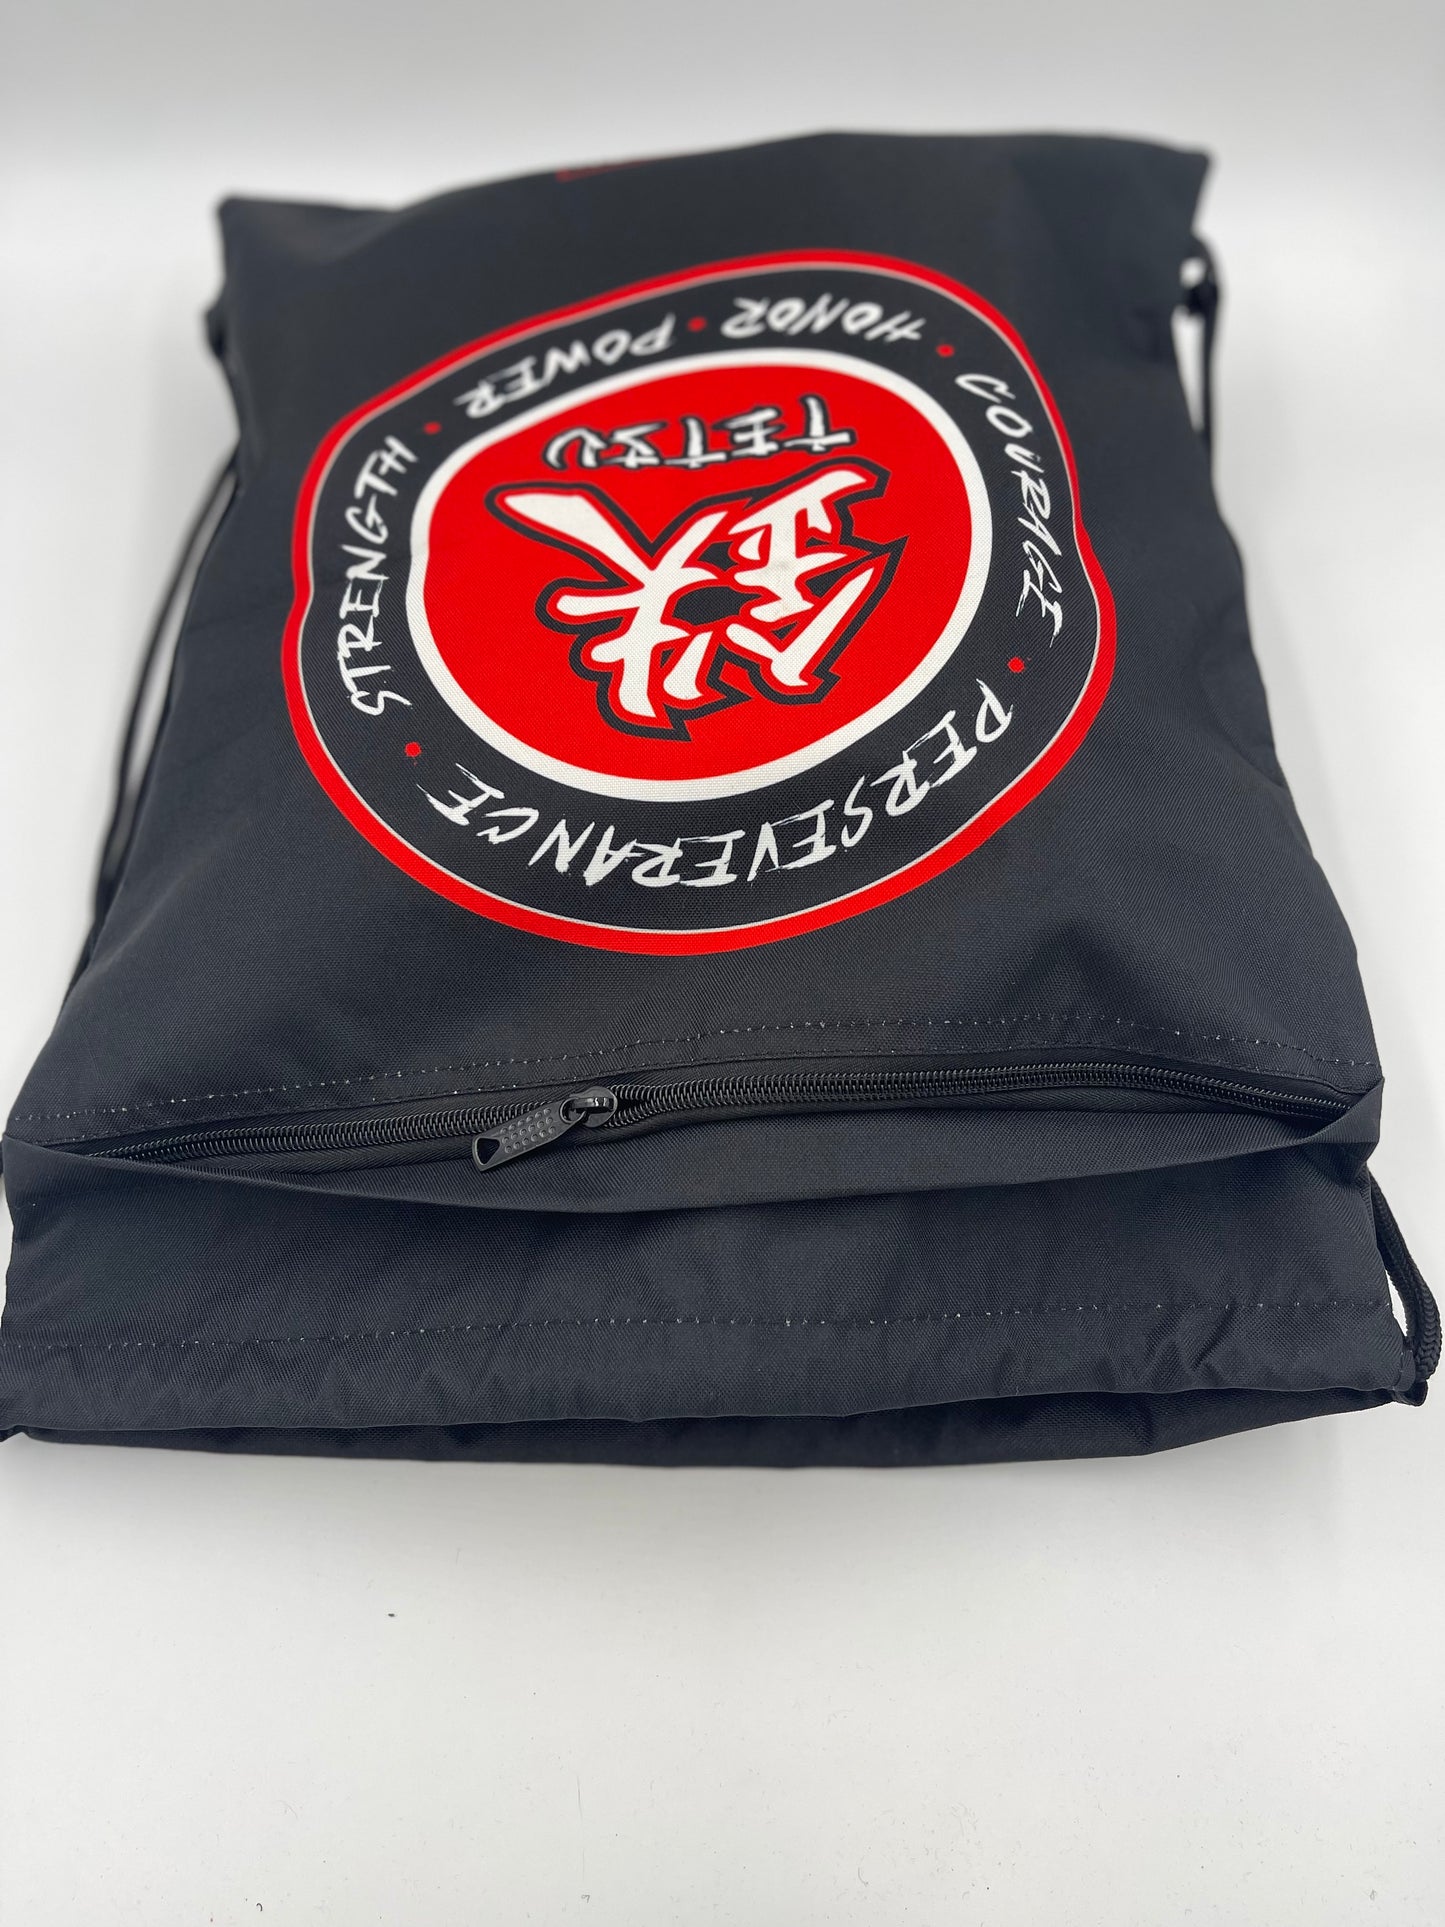 TETSU Cinch Gear Bag